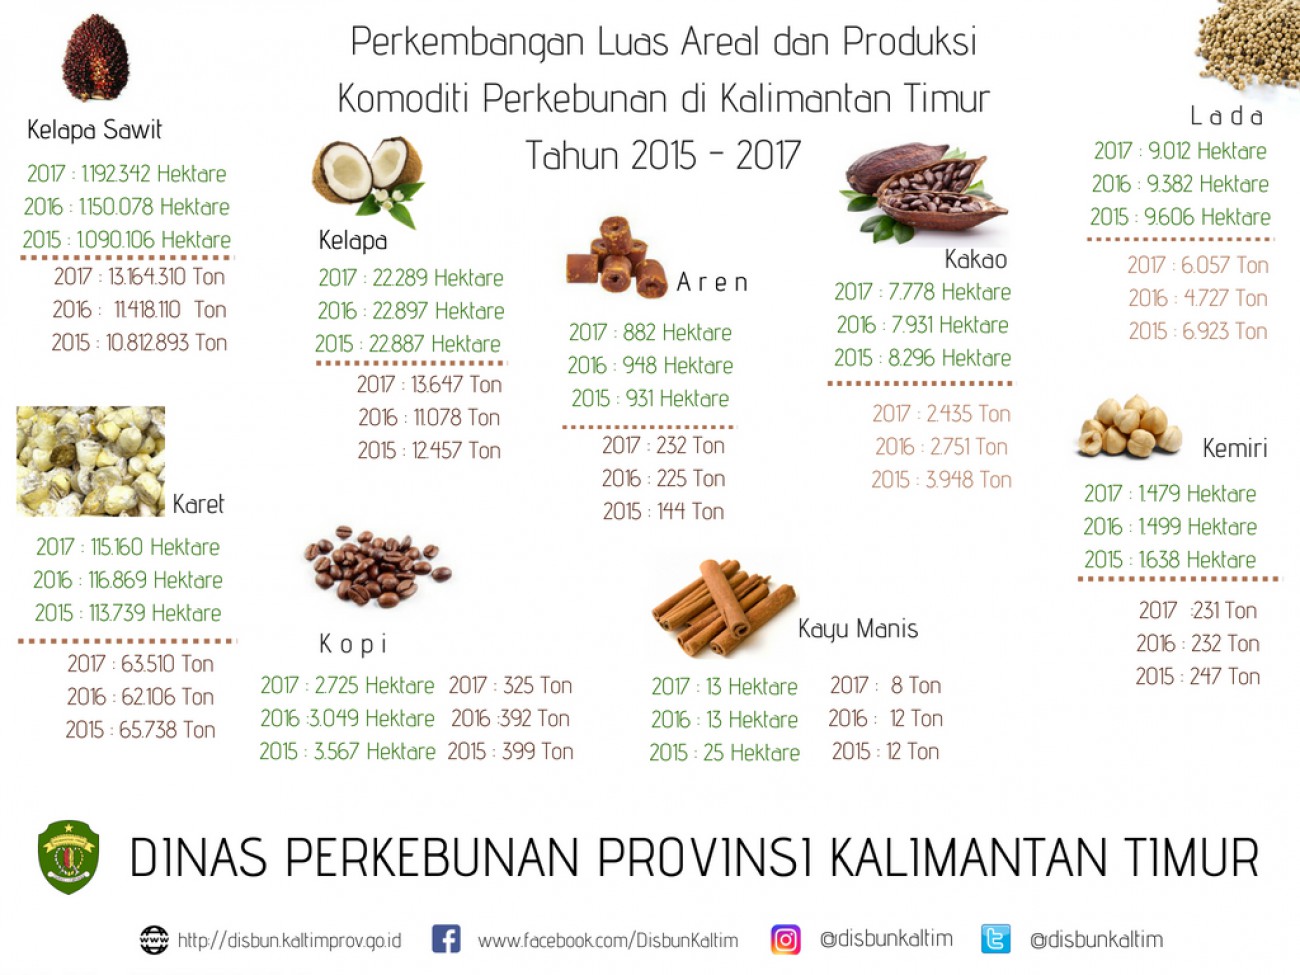 Perkembangan Luas Areal dan Produksi Perkebunan Kalimantan Timur Tahun 2015 - 2017